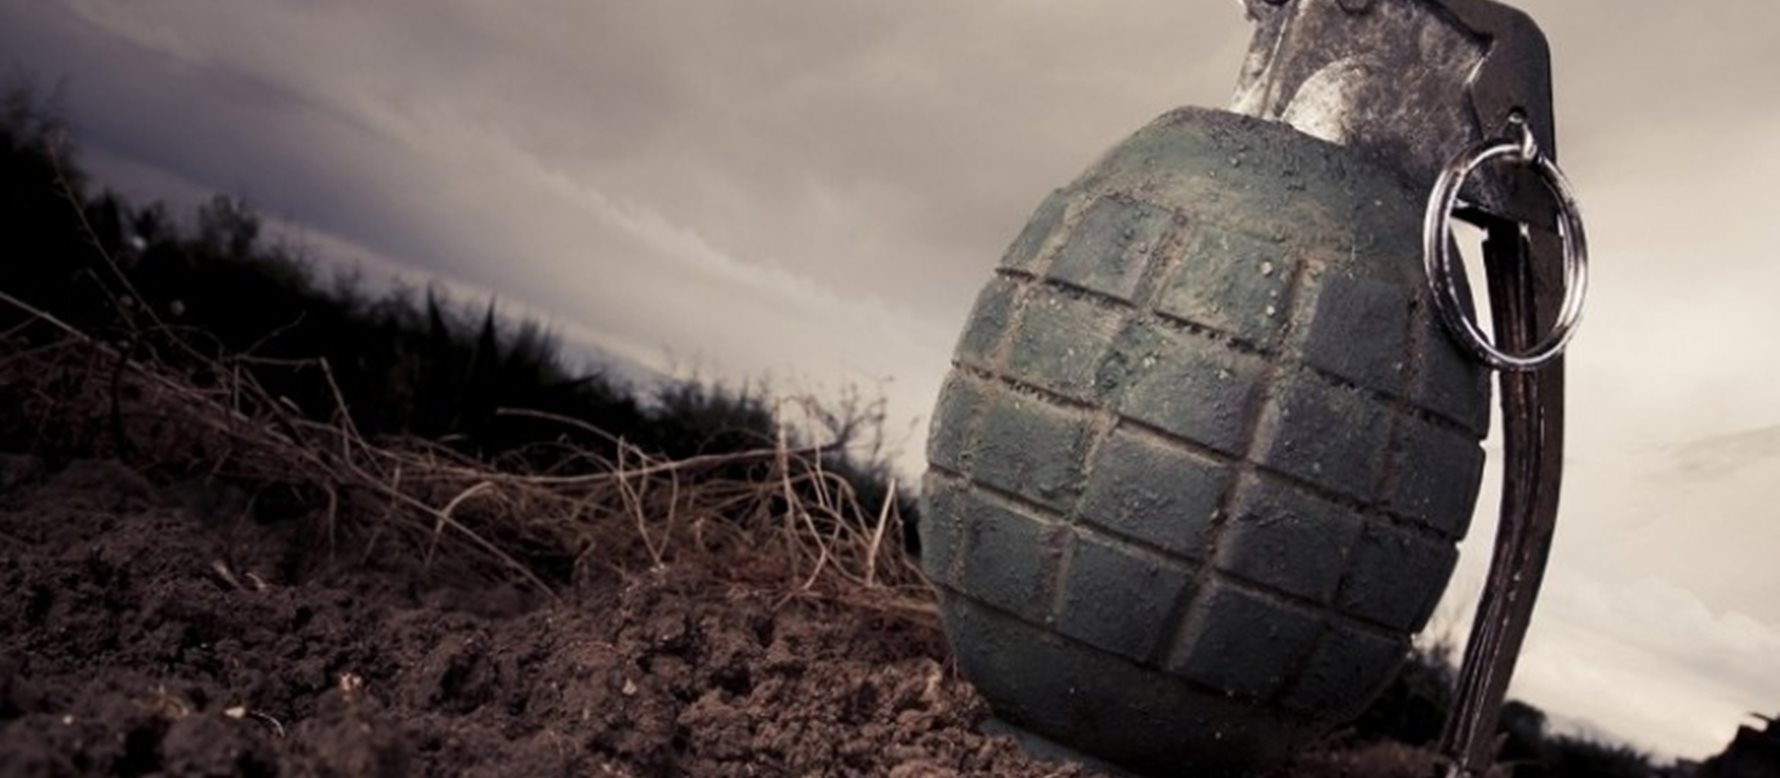 Aμυντική χειροβομβίδα εντοπίστηκε στην Αραδίππου-Καταστράφηκε από Πυροτεχνουργούς